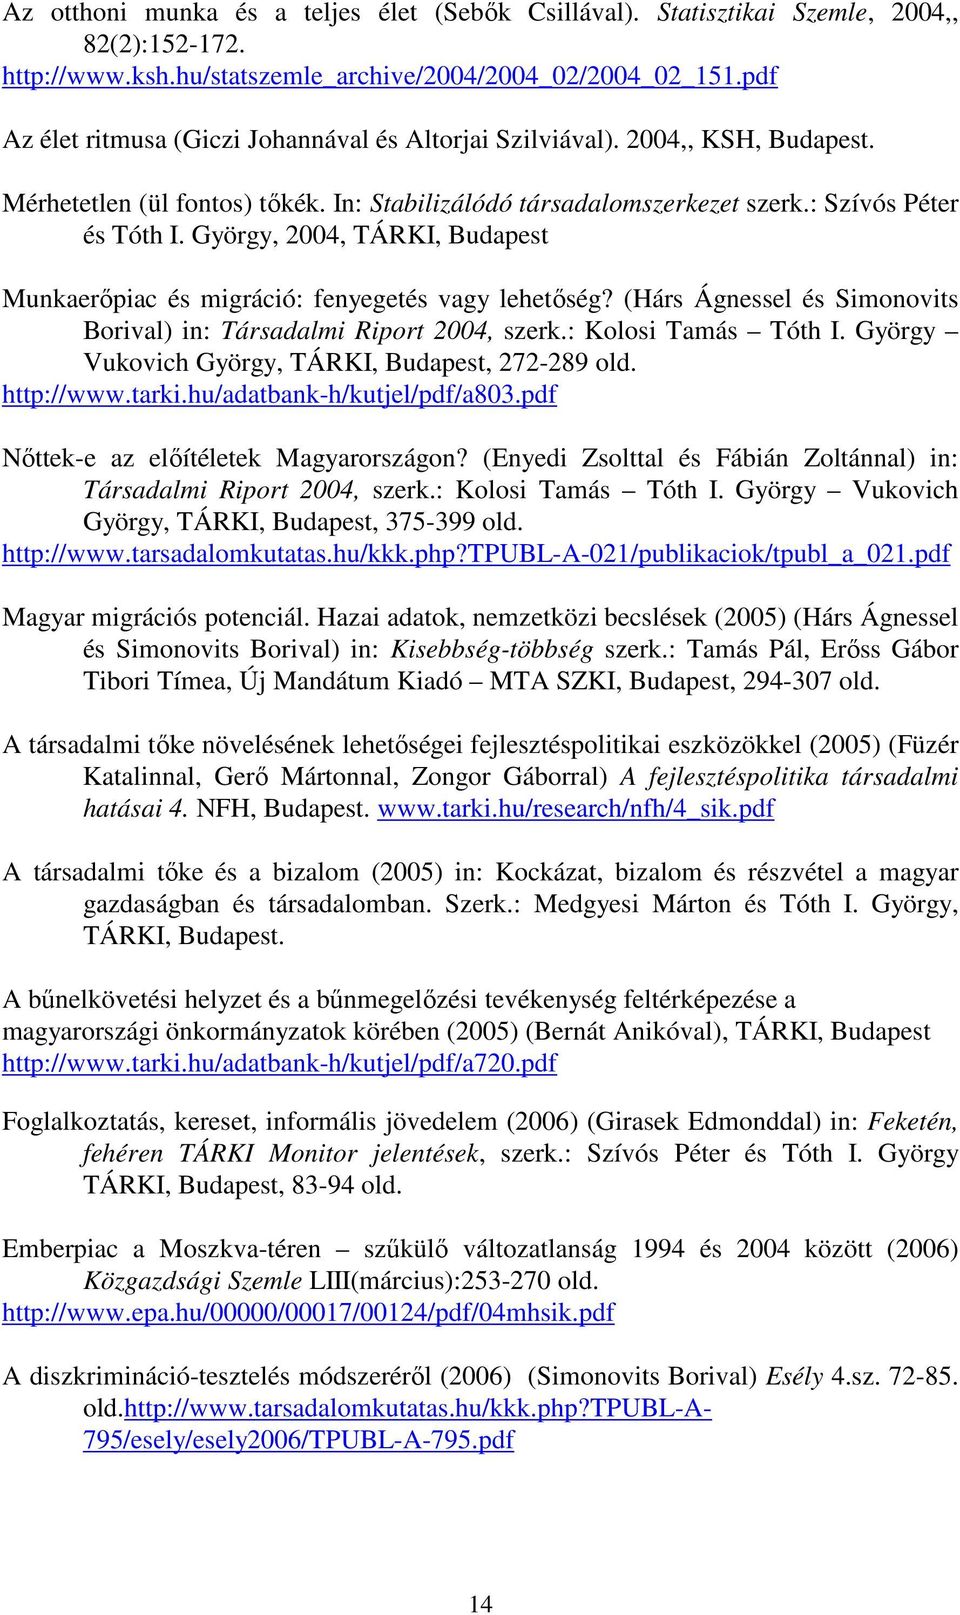 György, 2004, TÁRKI, Budapest Munkaerıpiac és migráció: fenyegetés vagy lehetıség? (Hárs Ágnessel és Simonovits Borival) in: Társadalmi Riport 2004, szerk.: Kolosi Tamás Tóth I.